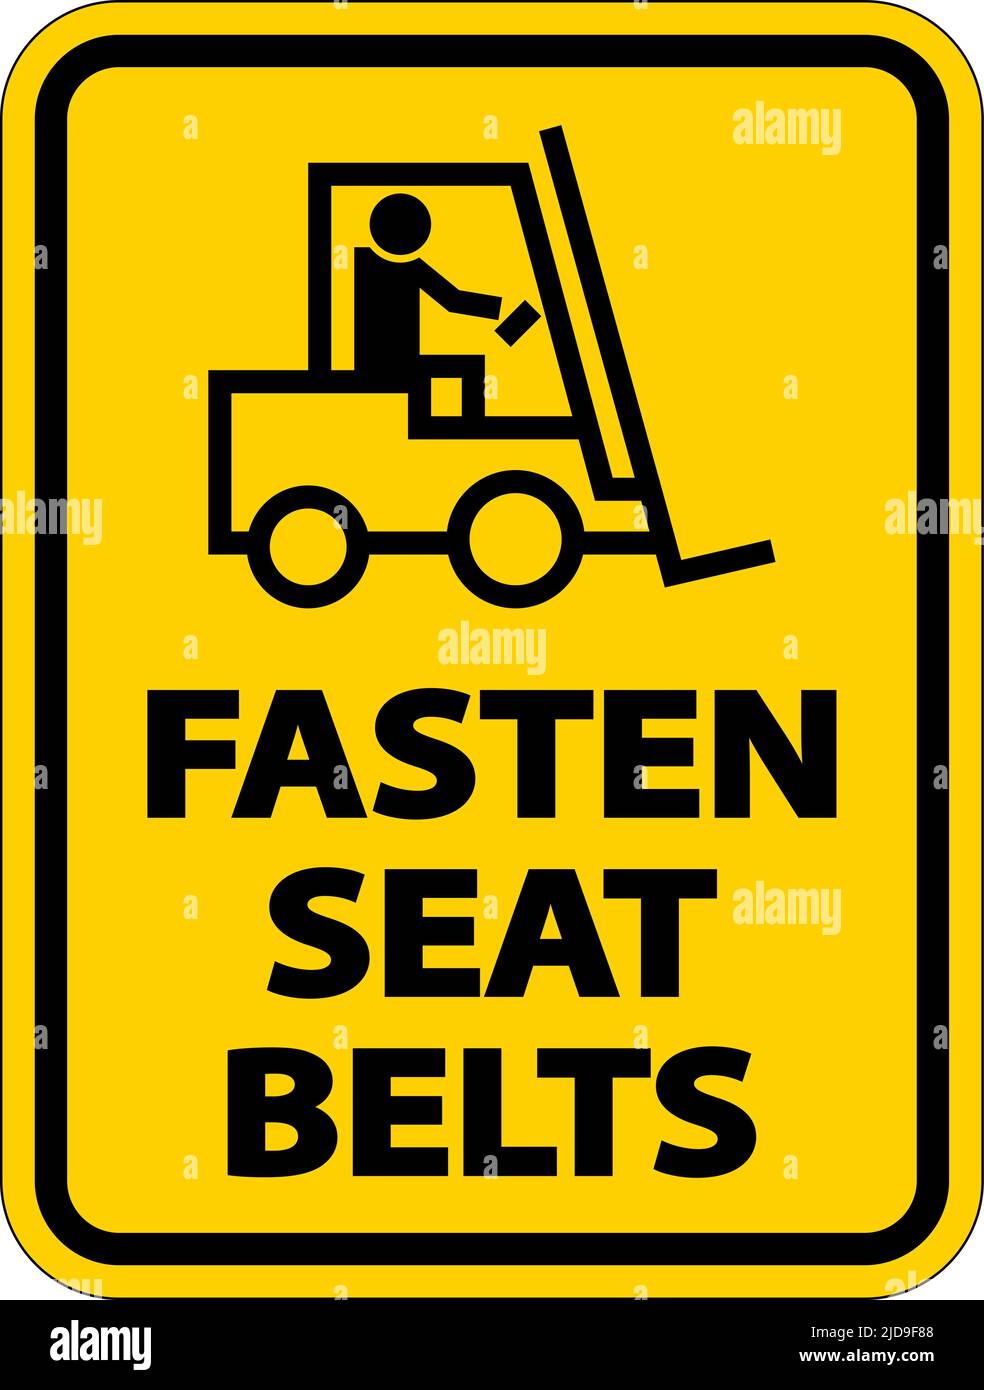 Affiche d'étiquette de bouclage des ceintures de sécurité sur fond blanc Illustration de Vecteur